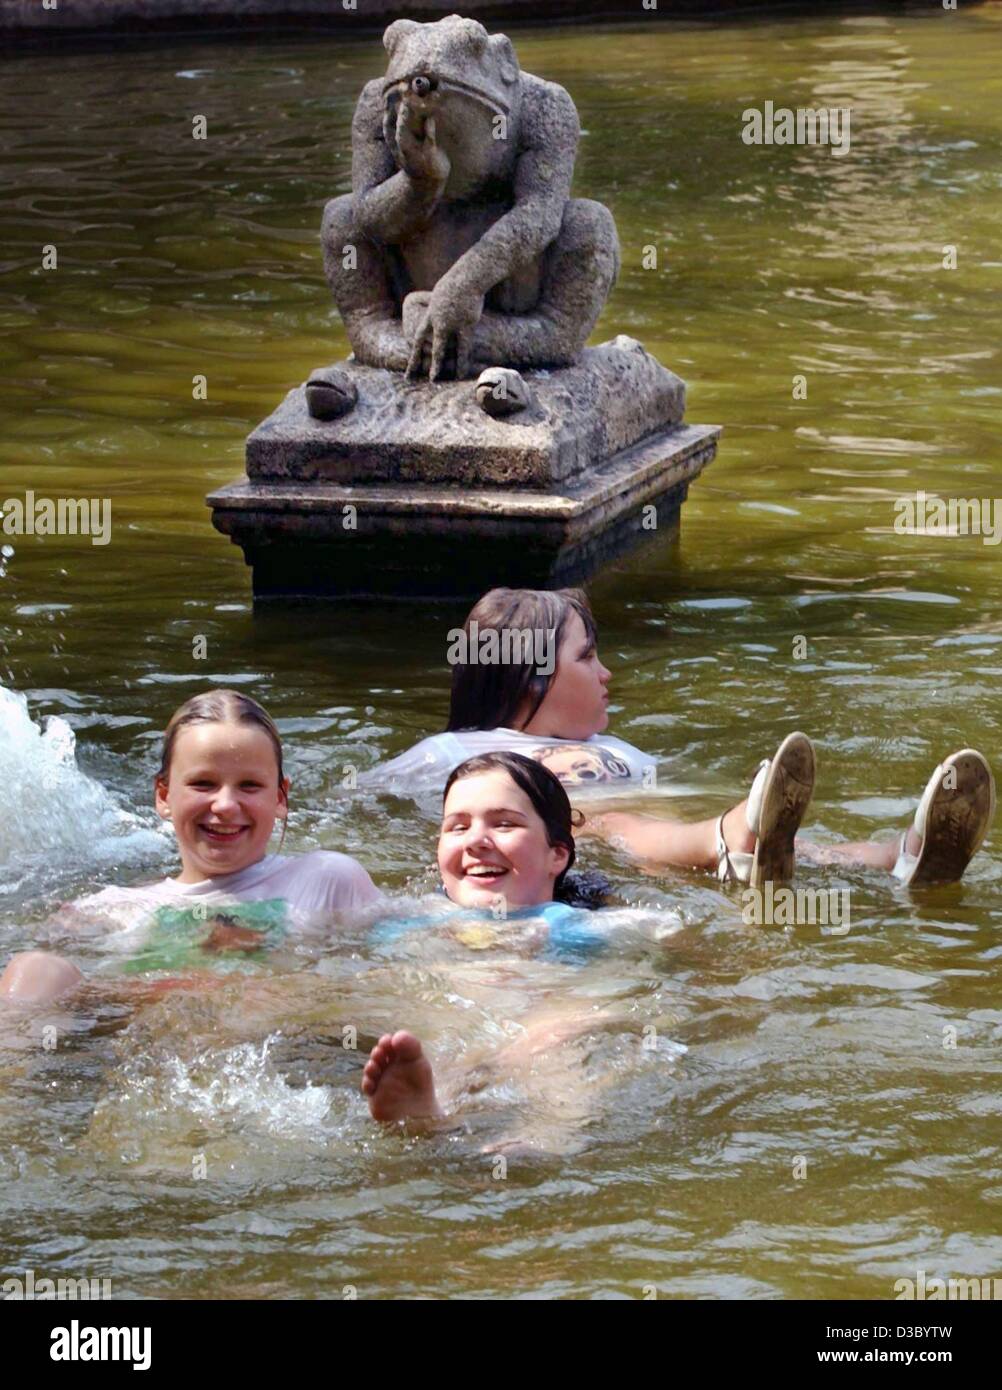 (Dpa) - La rana nella favola fontana ha un aspetto un po' delusi: nessuna delle giovani donne che giace ai suoi piedi sembra voler kiss lui... fotografato nel distretto di Friedrichshein a Berlino, 23 luglio 2003. Foto Stock